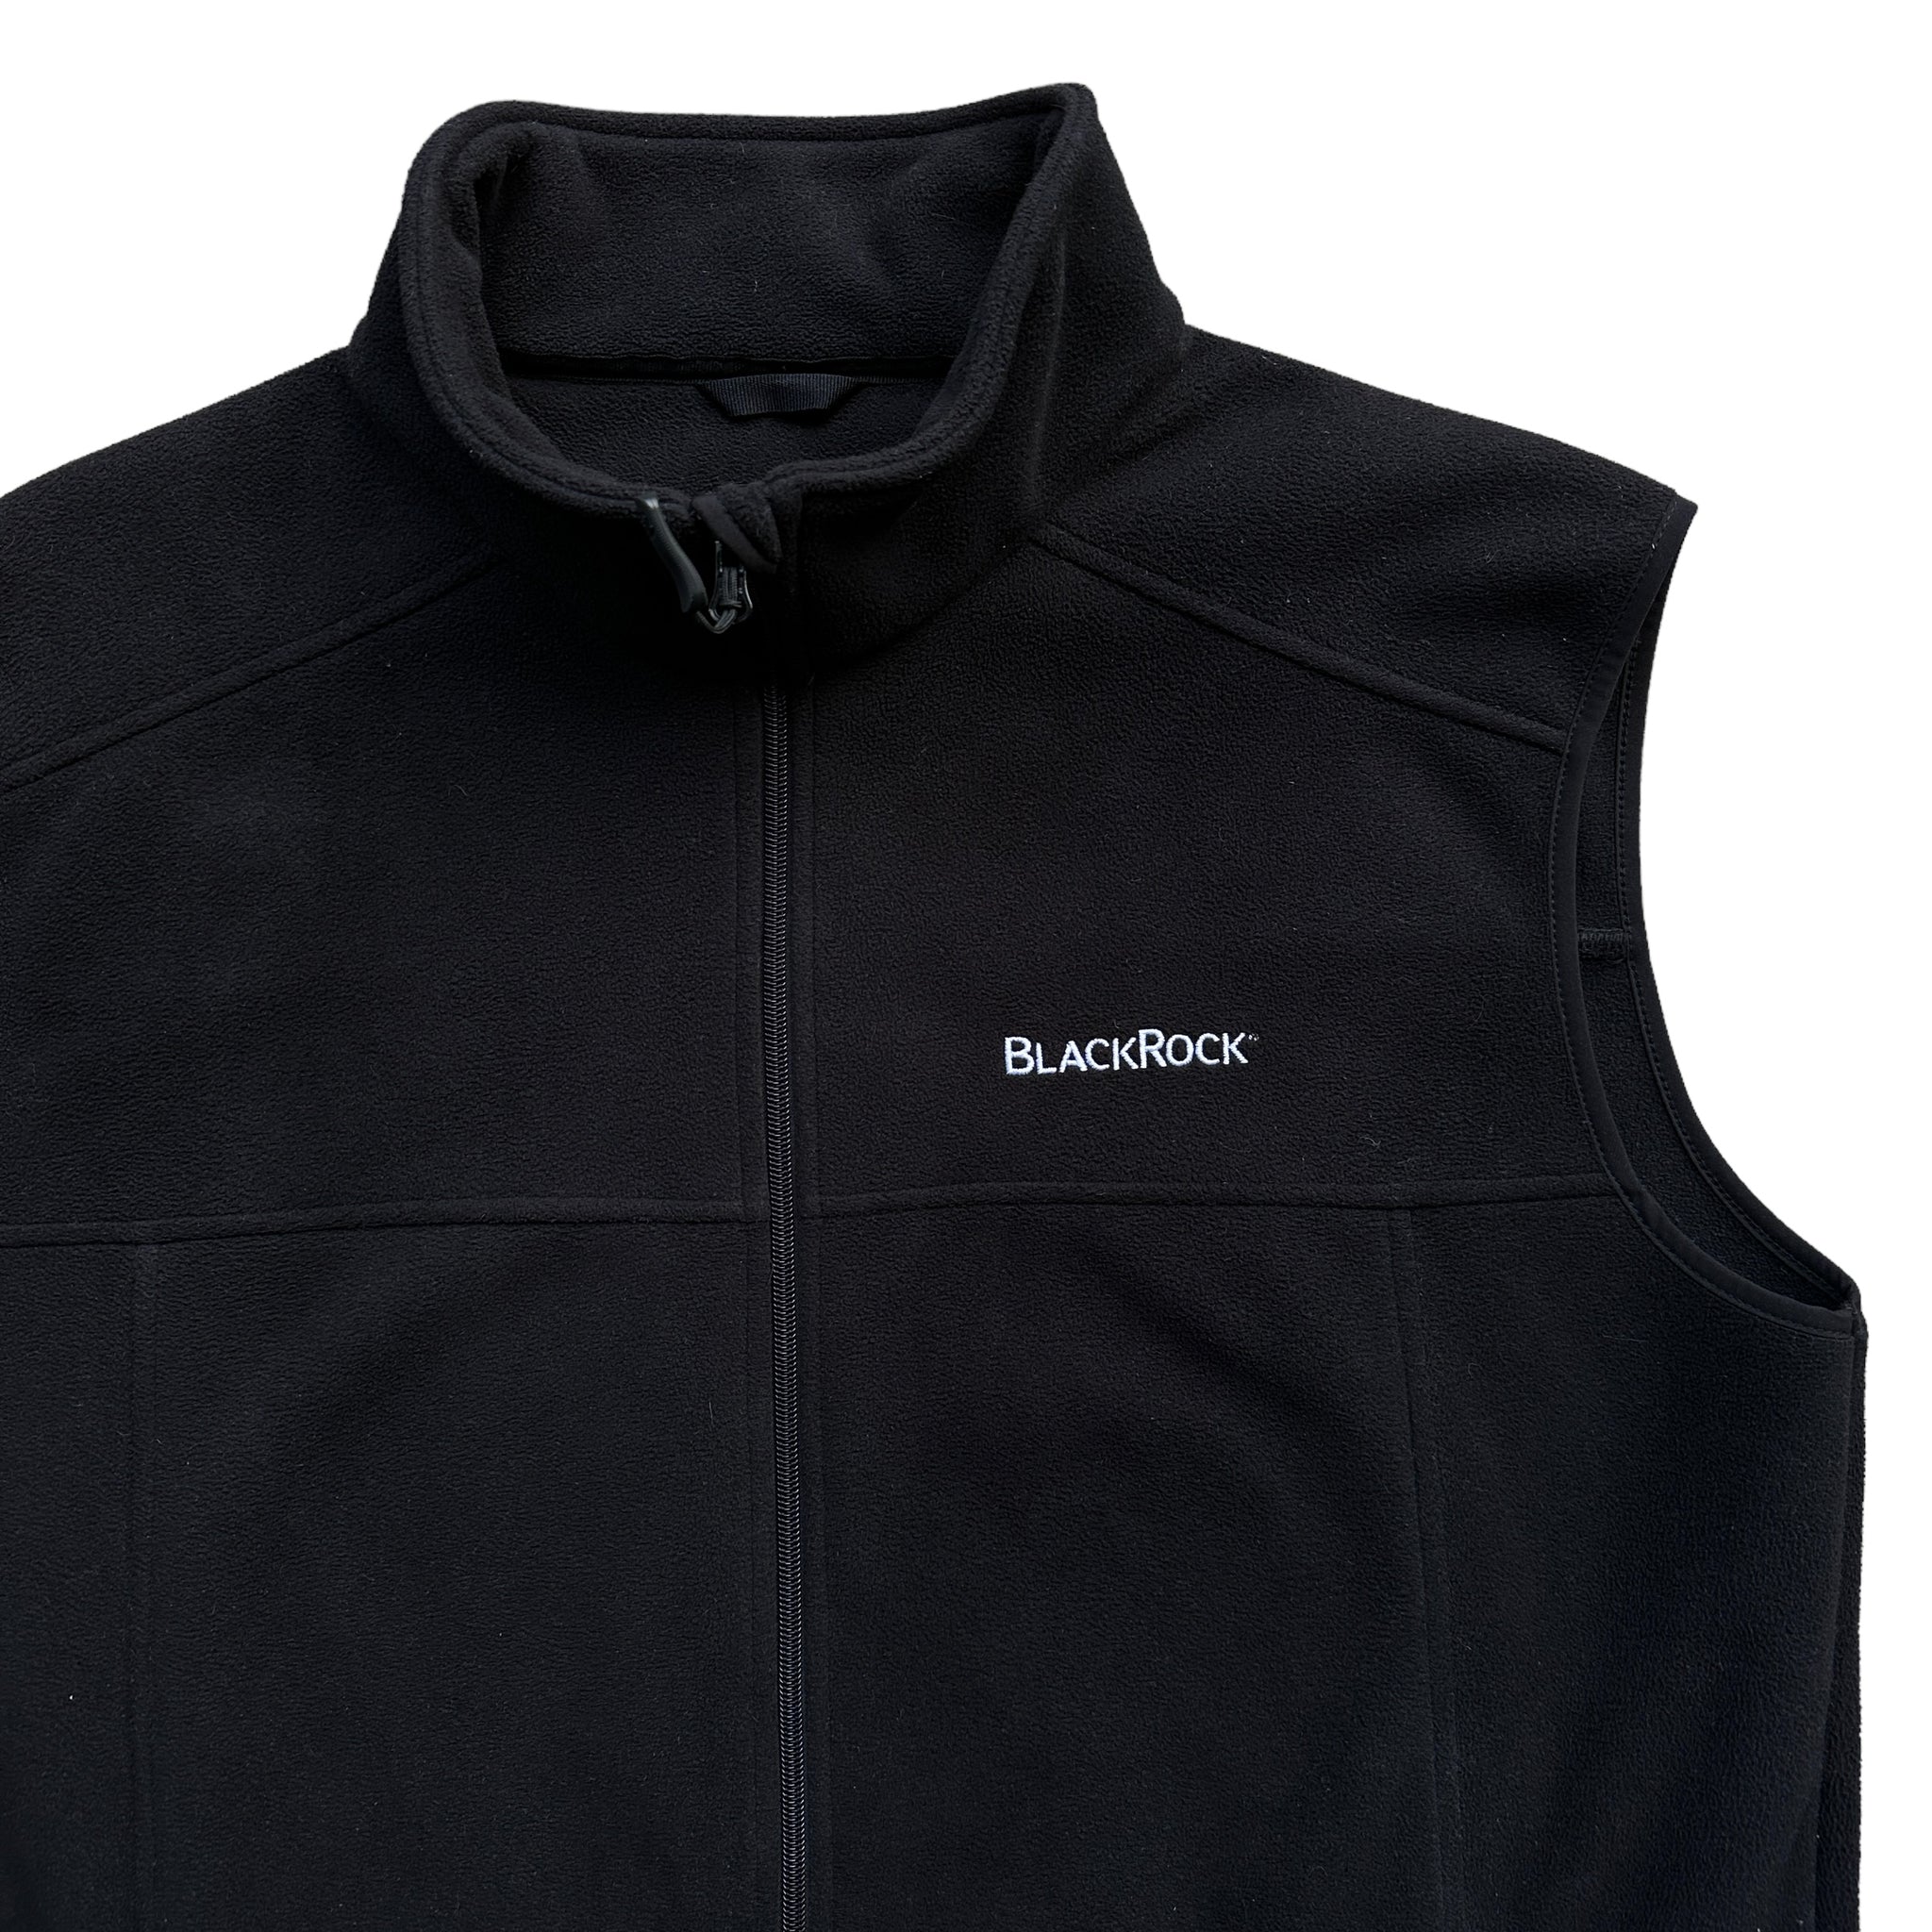 Blackrock vest XL